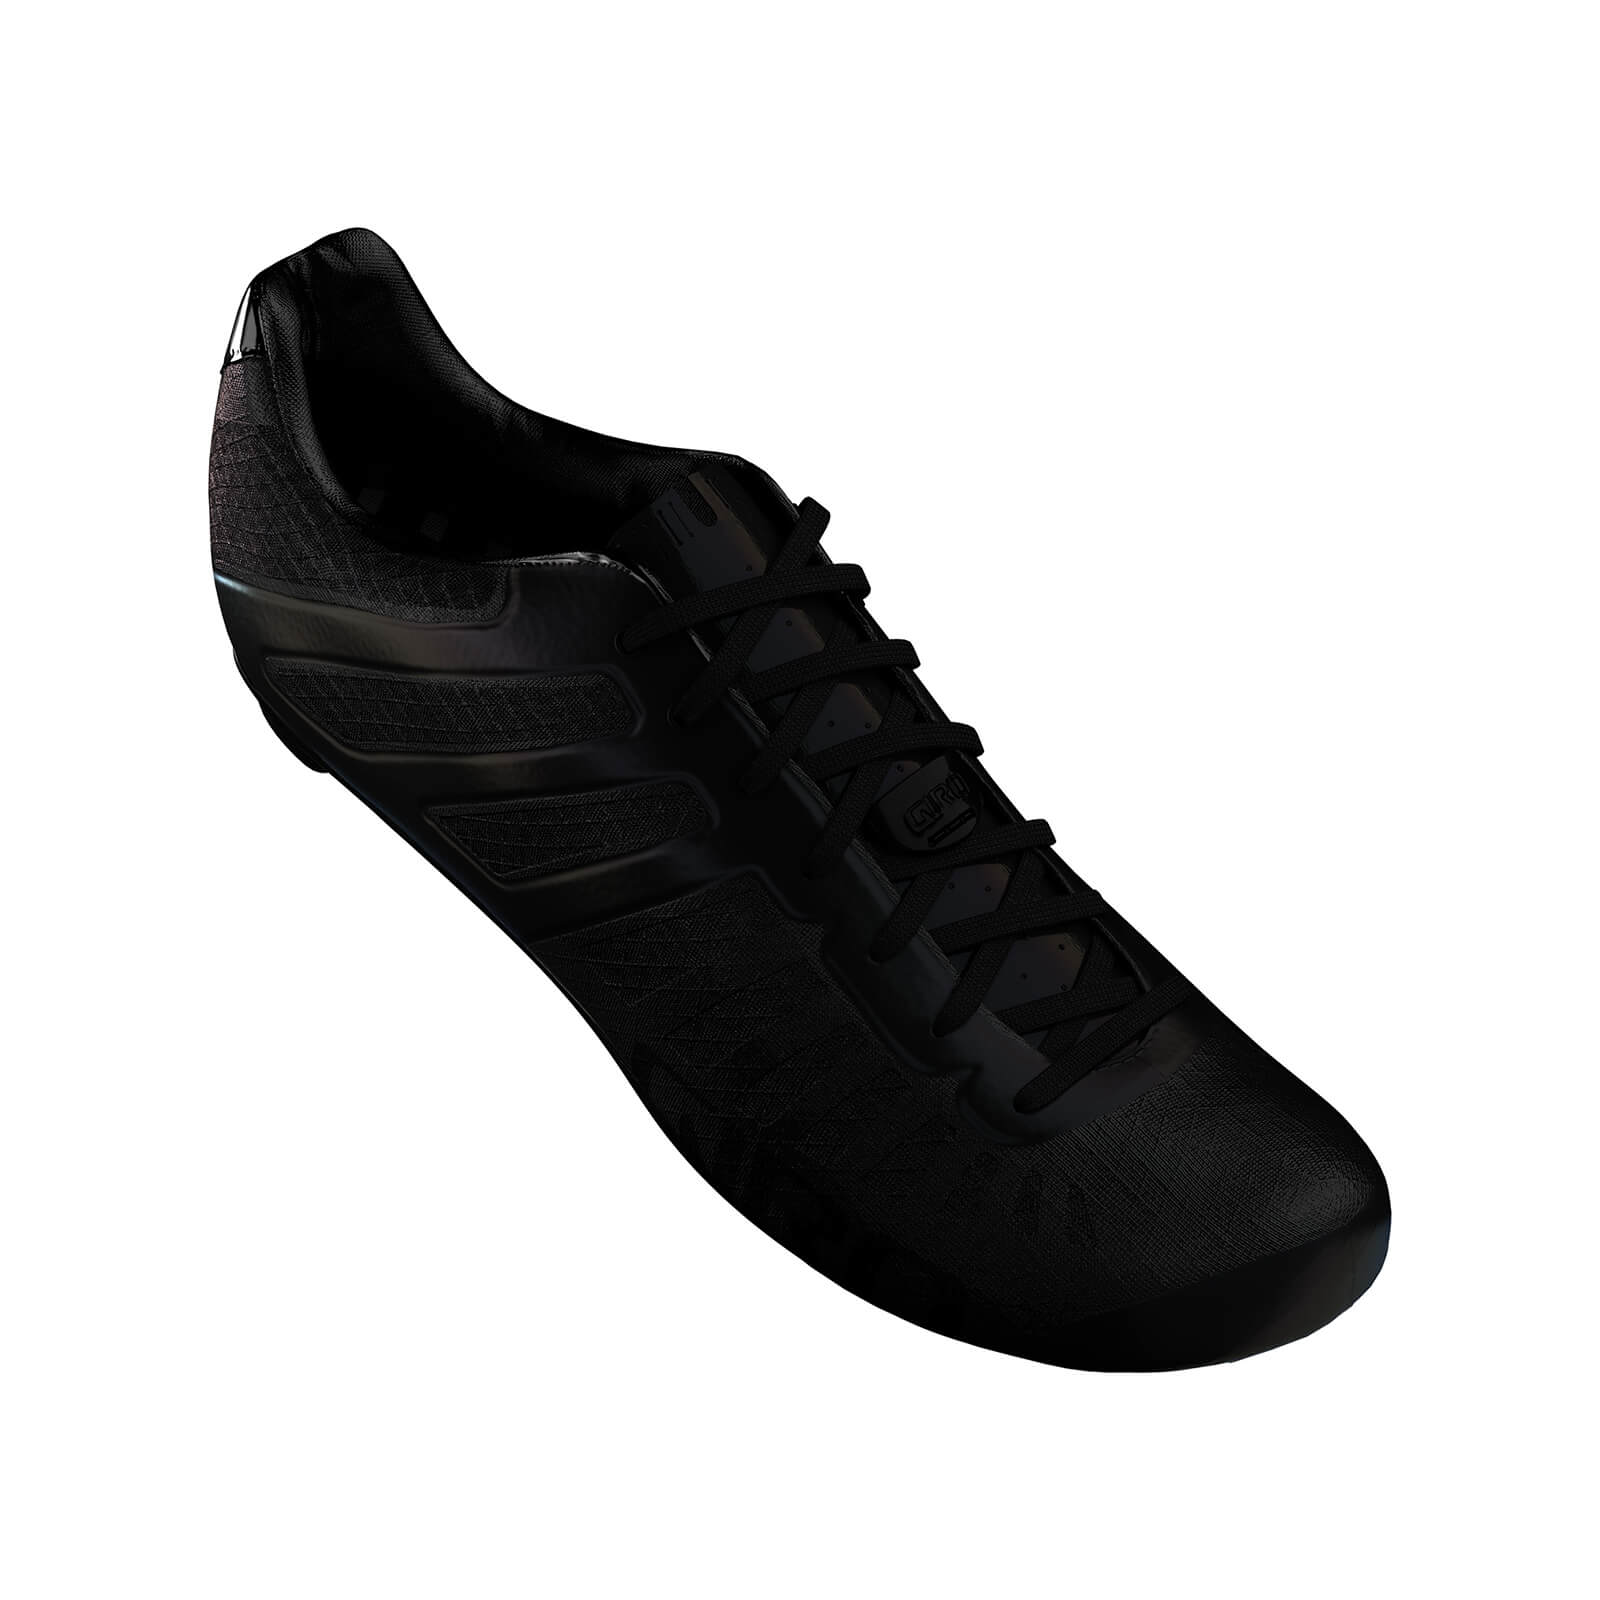 Giro Empire SLX Road Shoes – EU 42.5 – Carbon Black